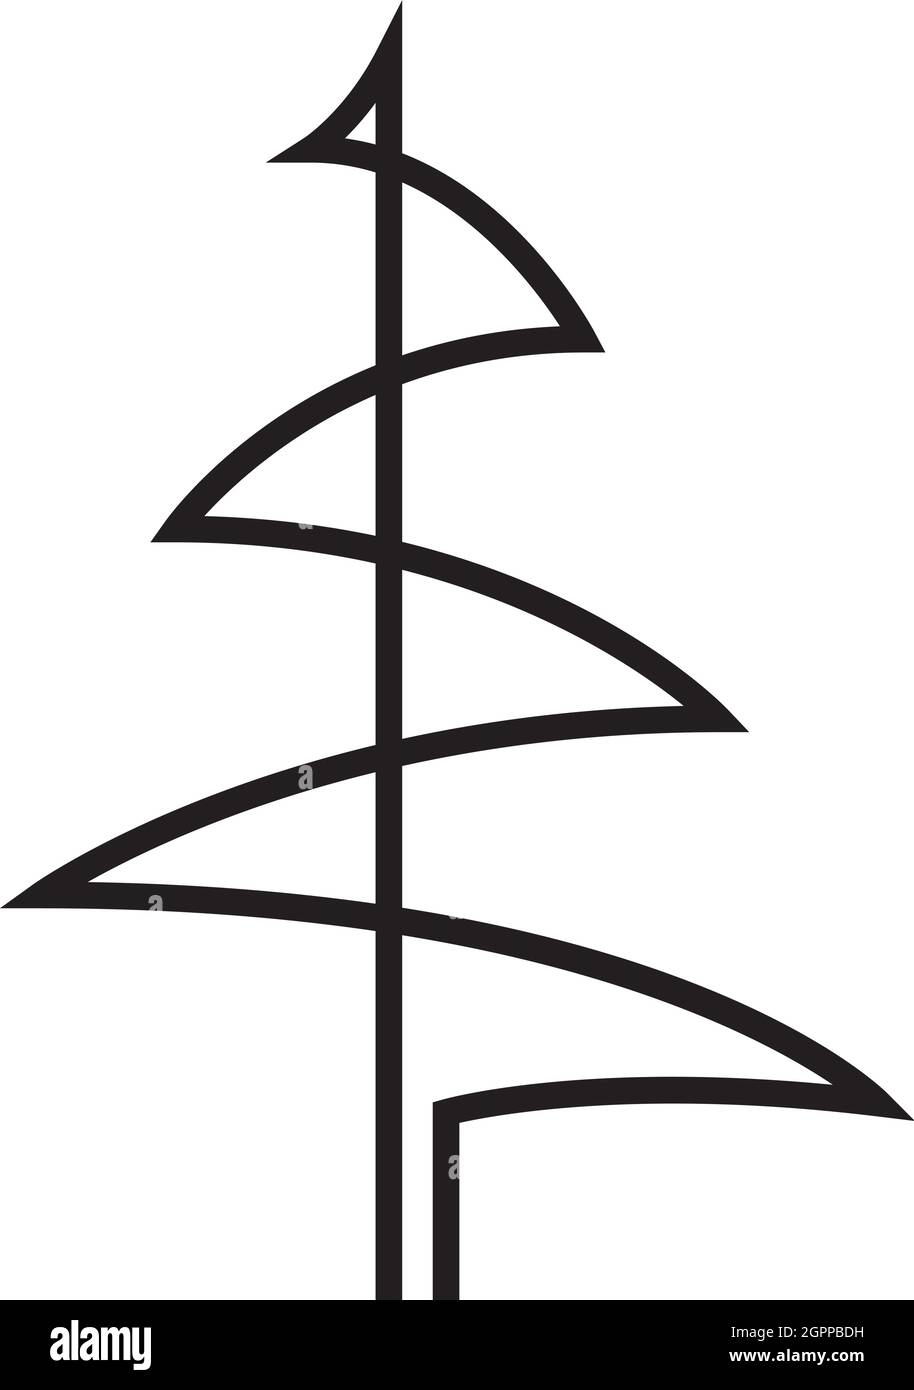 Kontinuierliche Linienzeichnung der Kiefer. Tannenbaum. Schwarz isoliert auf weißem Hintergrund. Handgezeichnete vektorgrafik weihnachtsbaum Stock Vektor